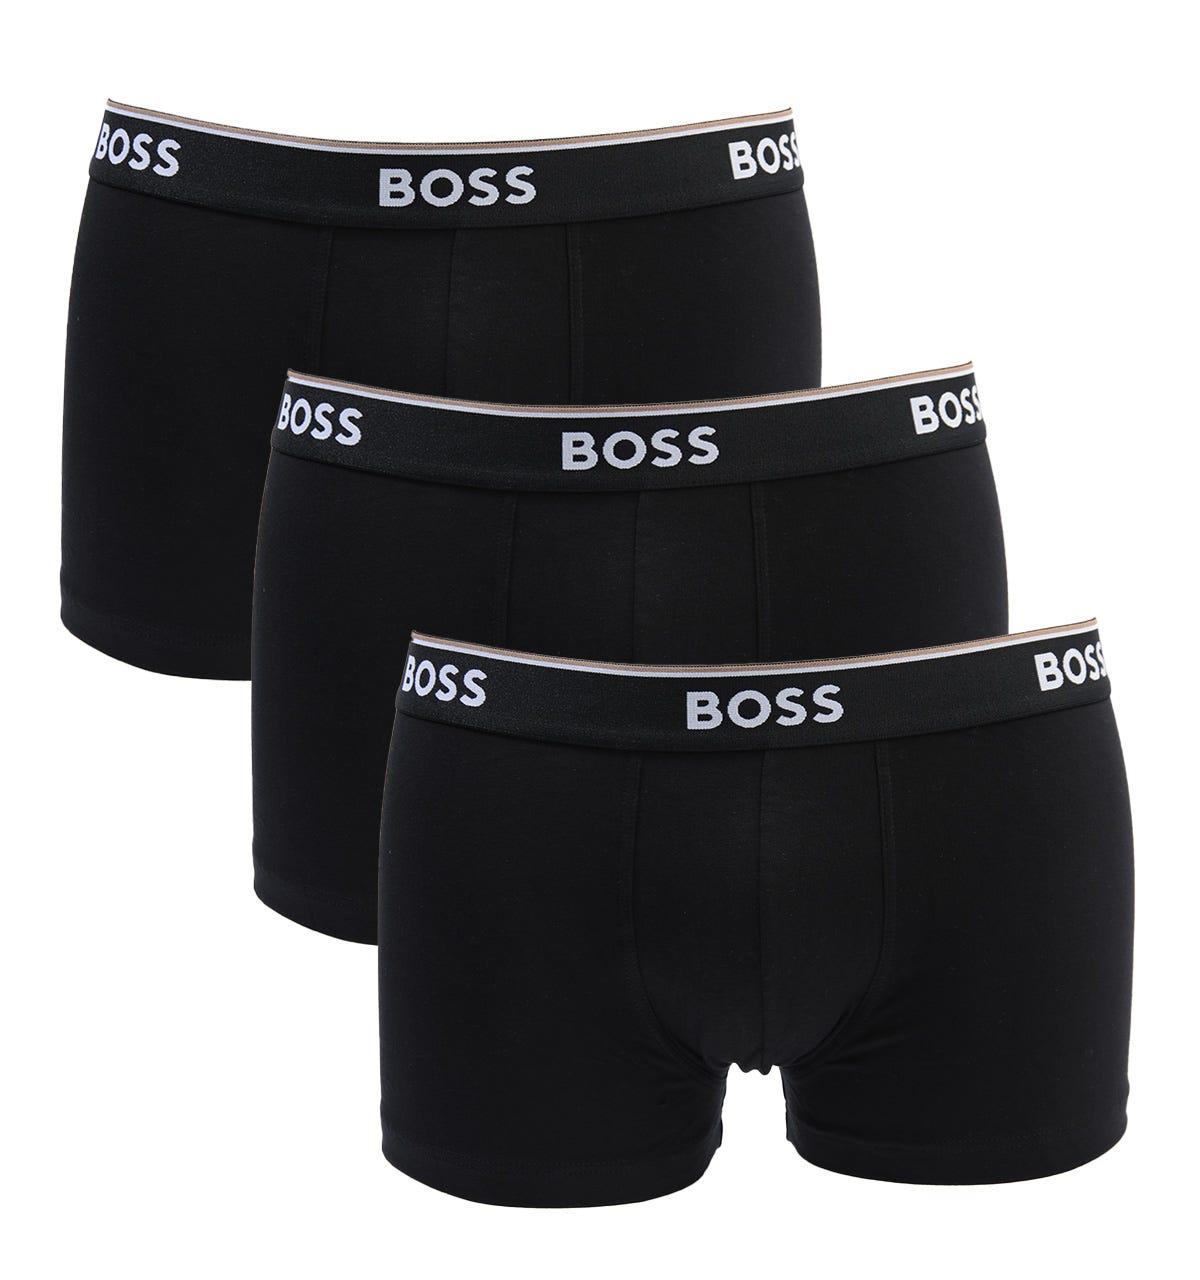 BOSS by HUGO BOSS Cotton Bodywear 3 Pack Power Boxer Trunks in Black ...